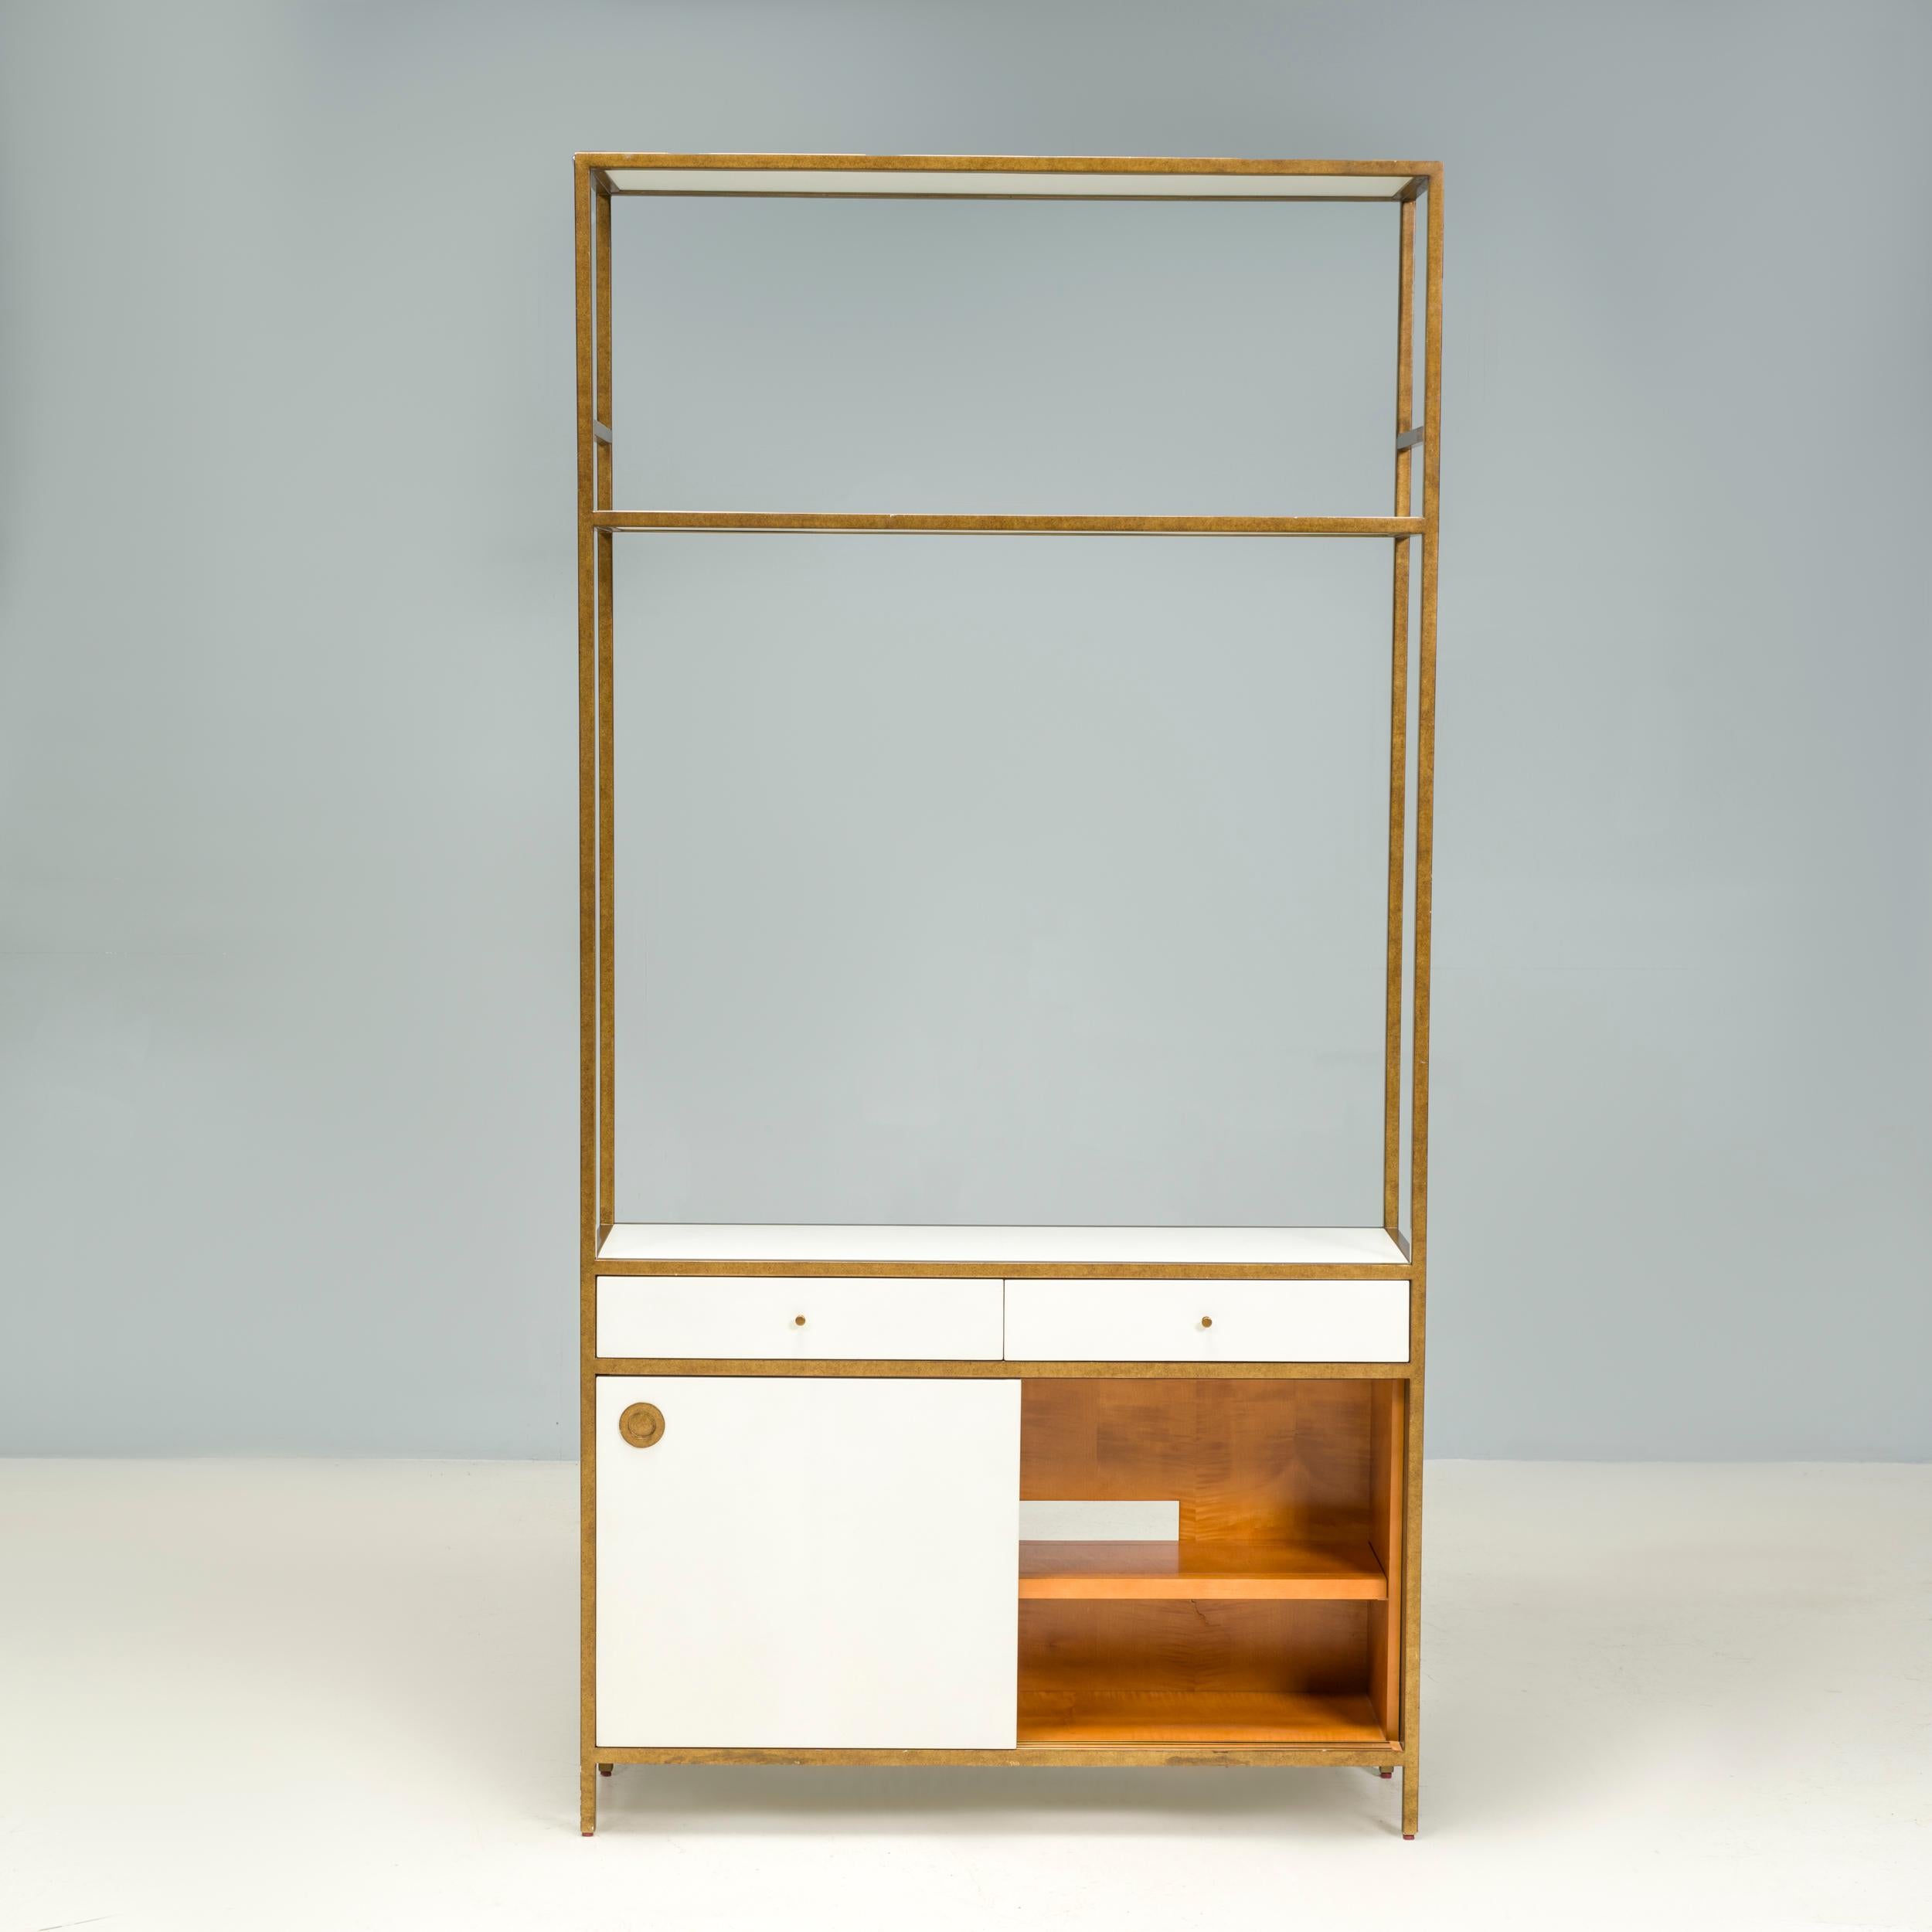 Julian Chichester a fondé sa société de design de meubles en 1995, en s'inspirant des formes classiques des XIXe et XXe siècles et en y apportant sa touche personnelle grâce à des finitions et des détails contemporains.

La bibliothèque University